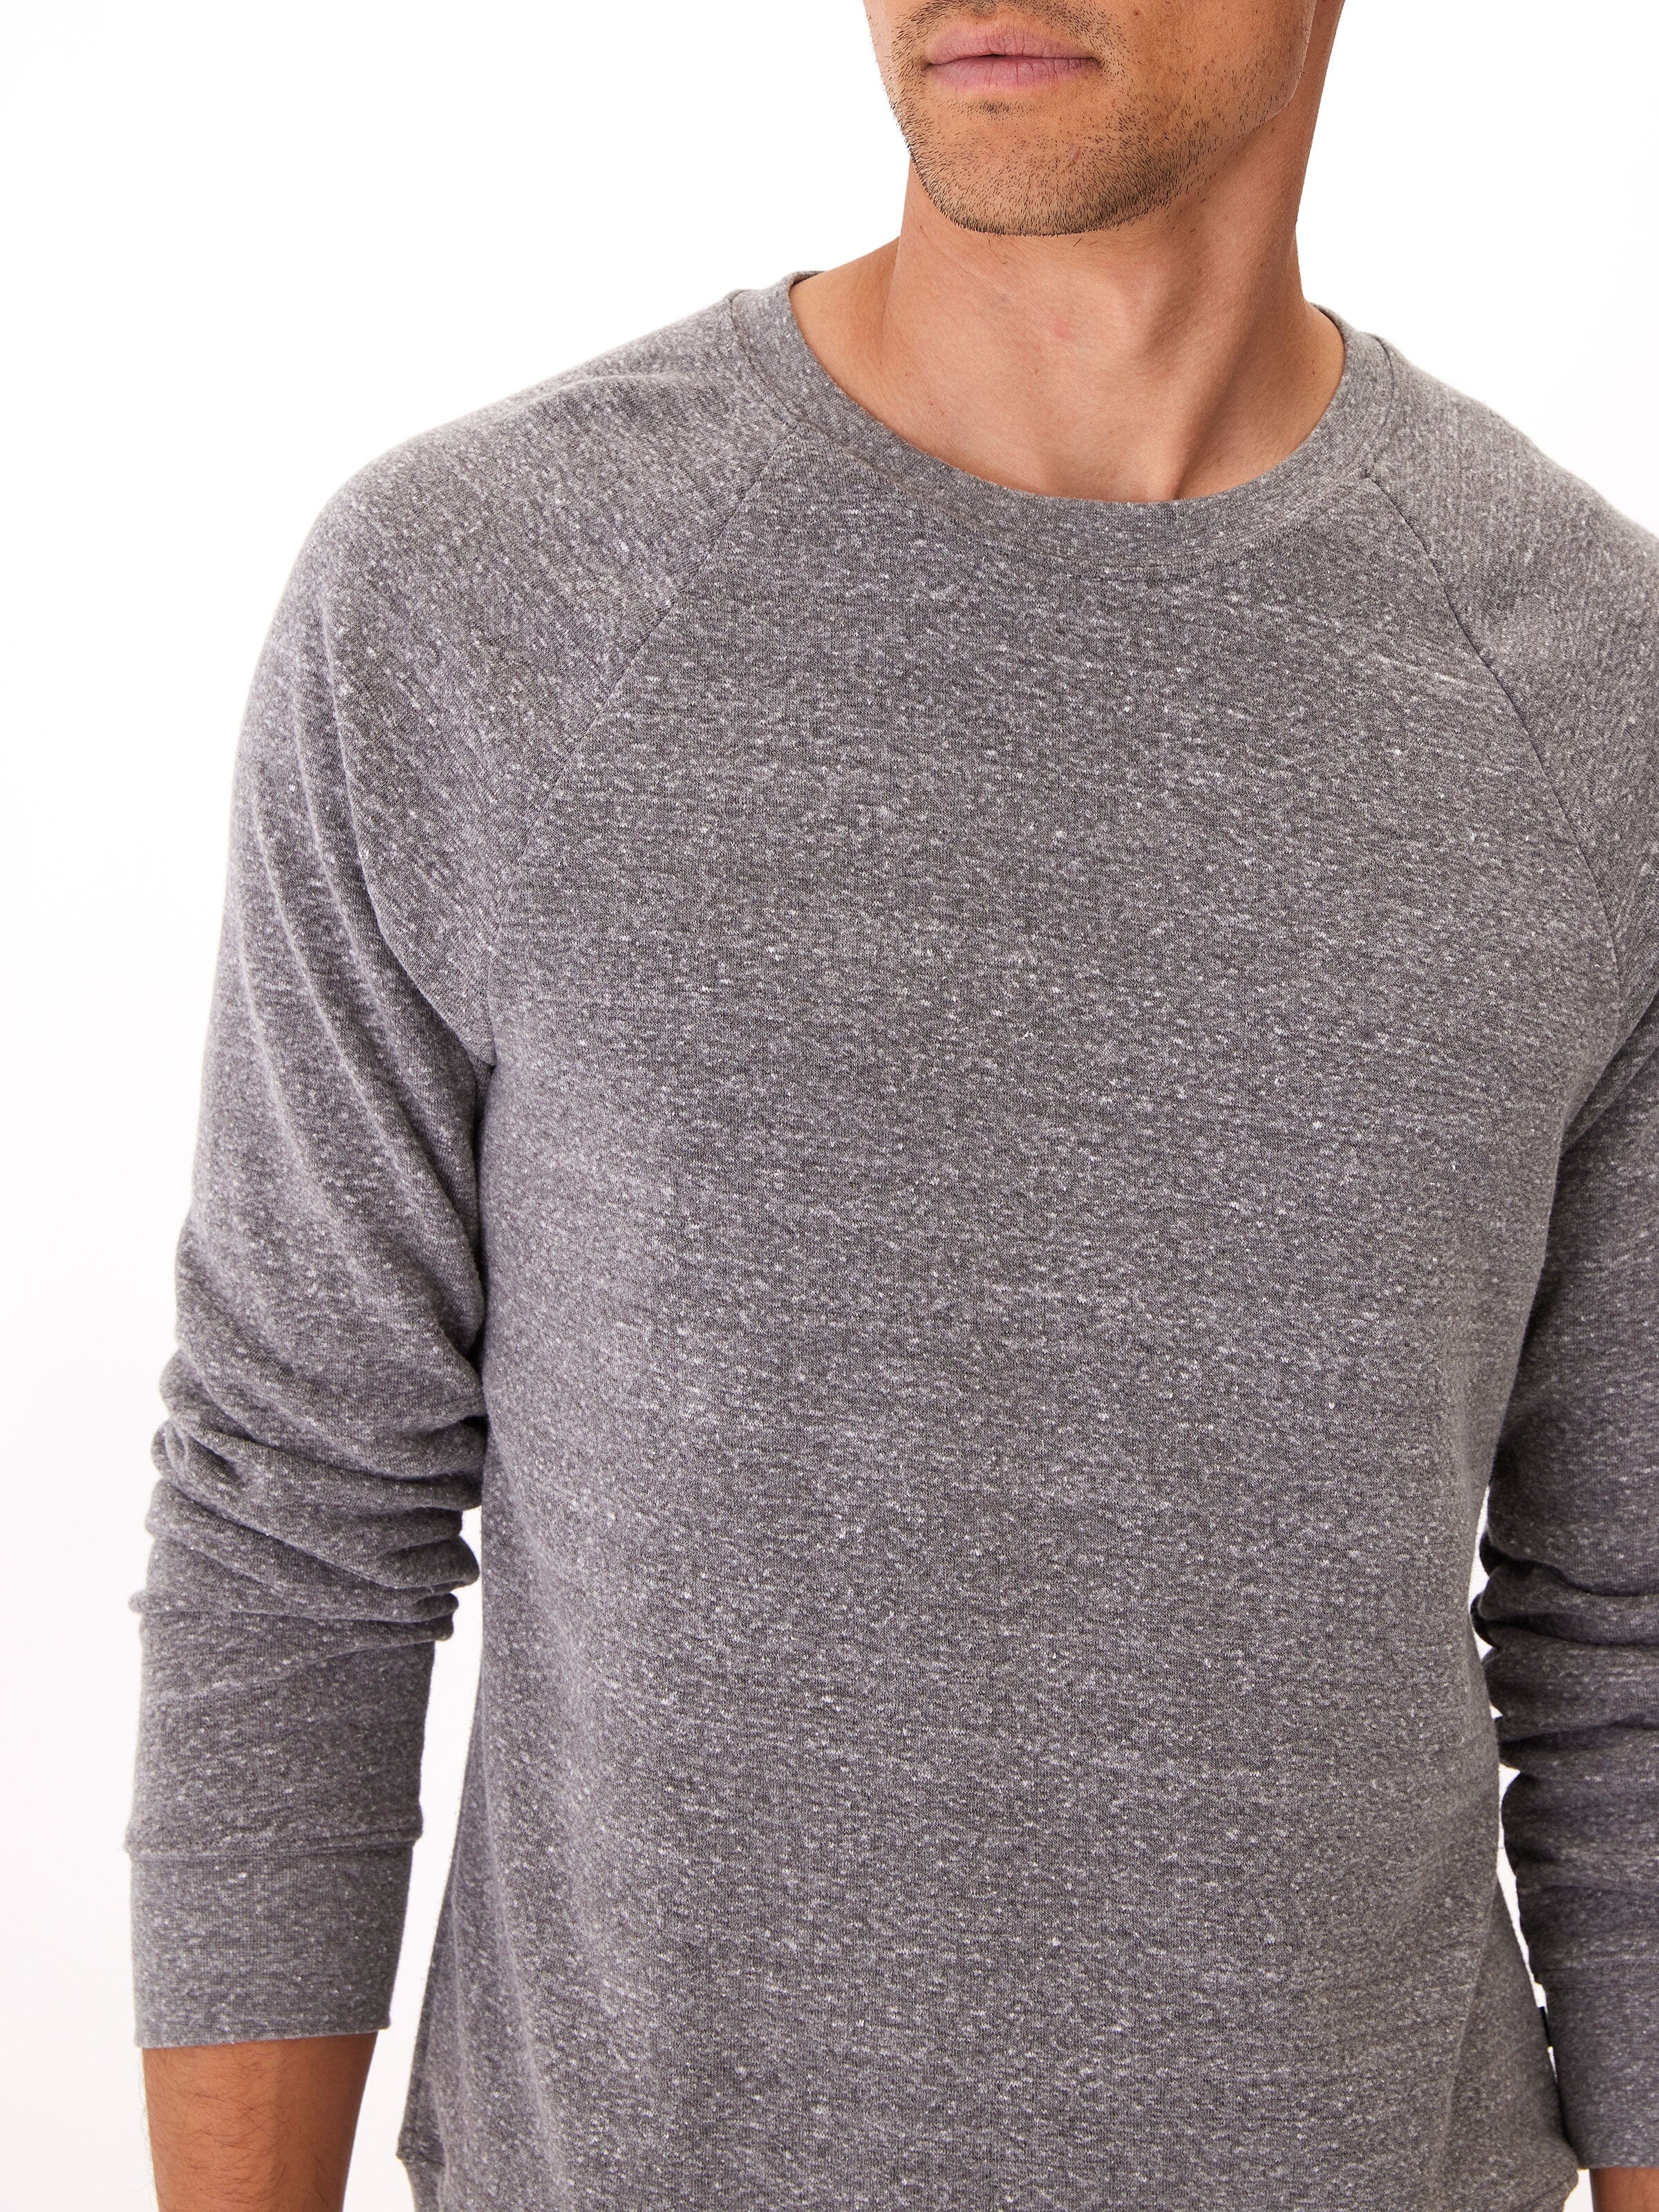 Triblend Ls Raglan Sweatshirt in Heather Grey – Threads 4 Thought